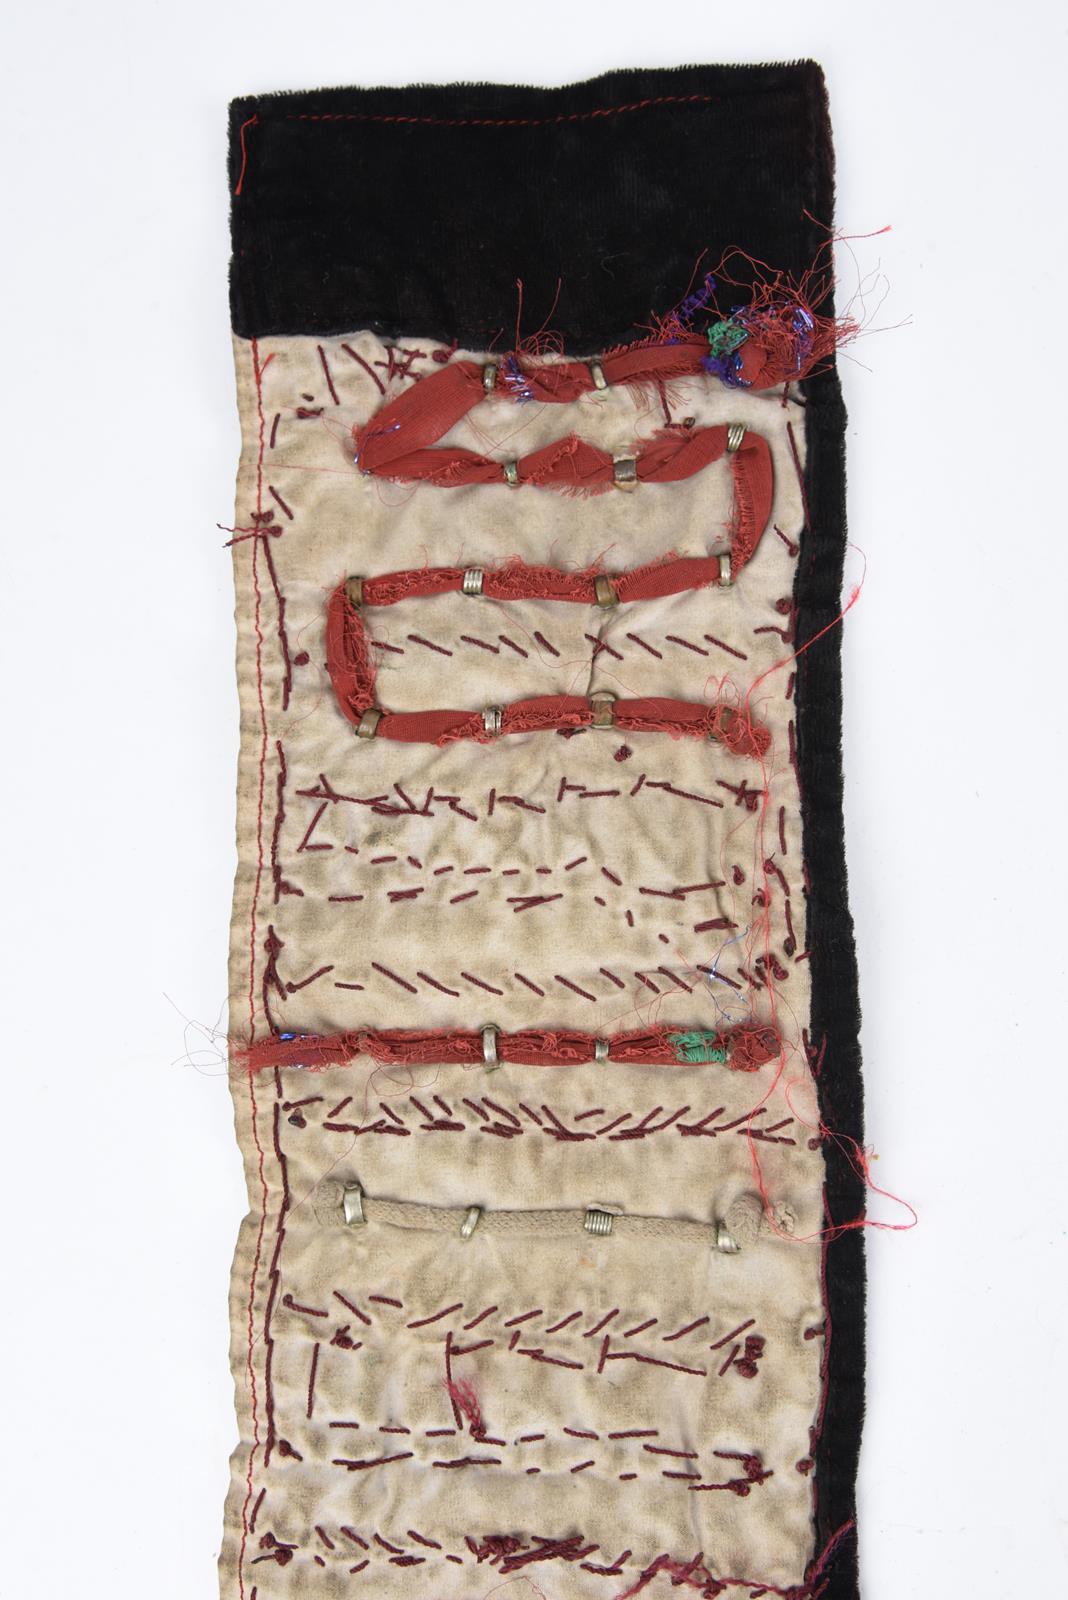 λA Bedouin amulet chest ornament cloth with numerous sewn on amulets and beads, 62cm long, and three - Bild 21 aus 27